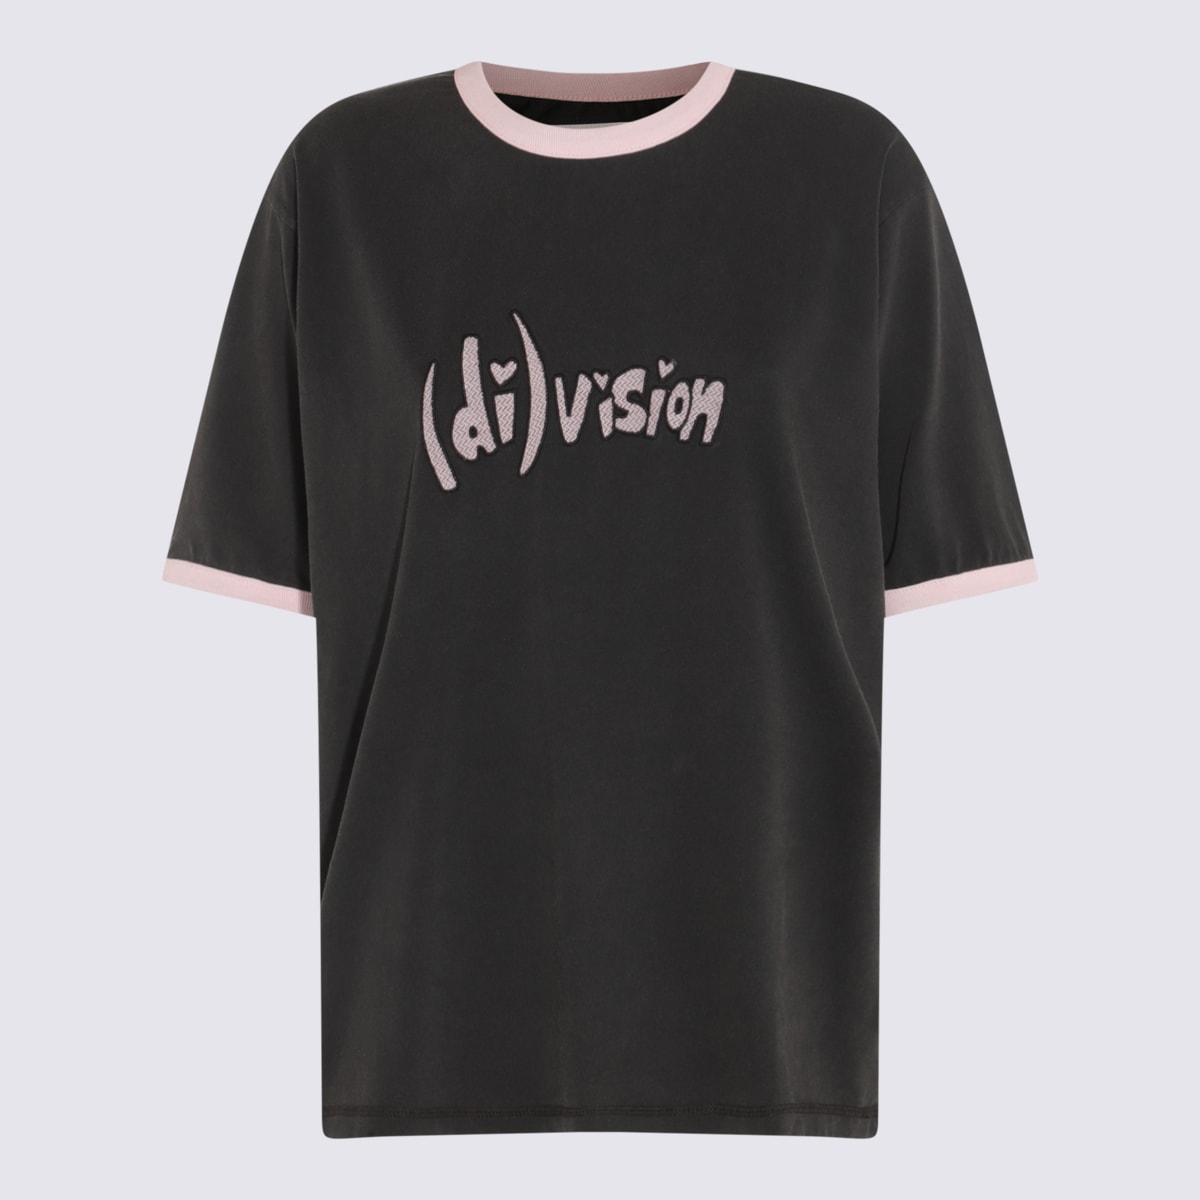 (d)ivision Black Cotton T-shirt